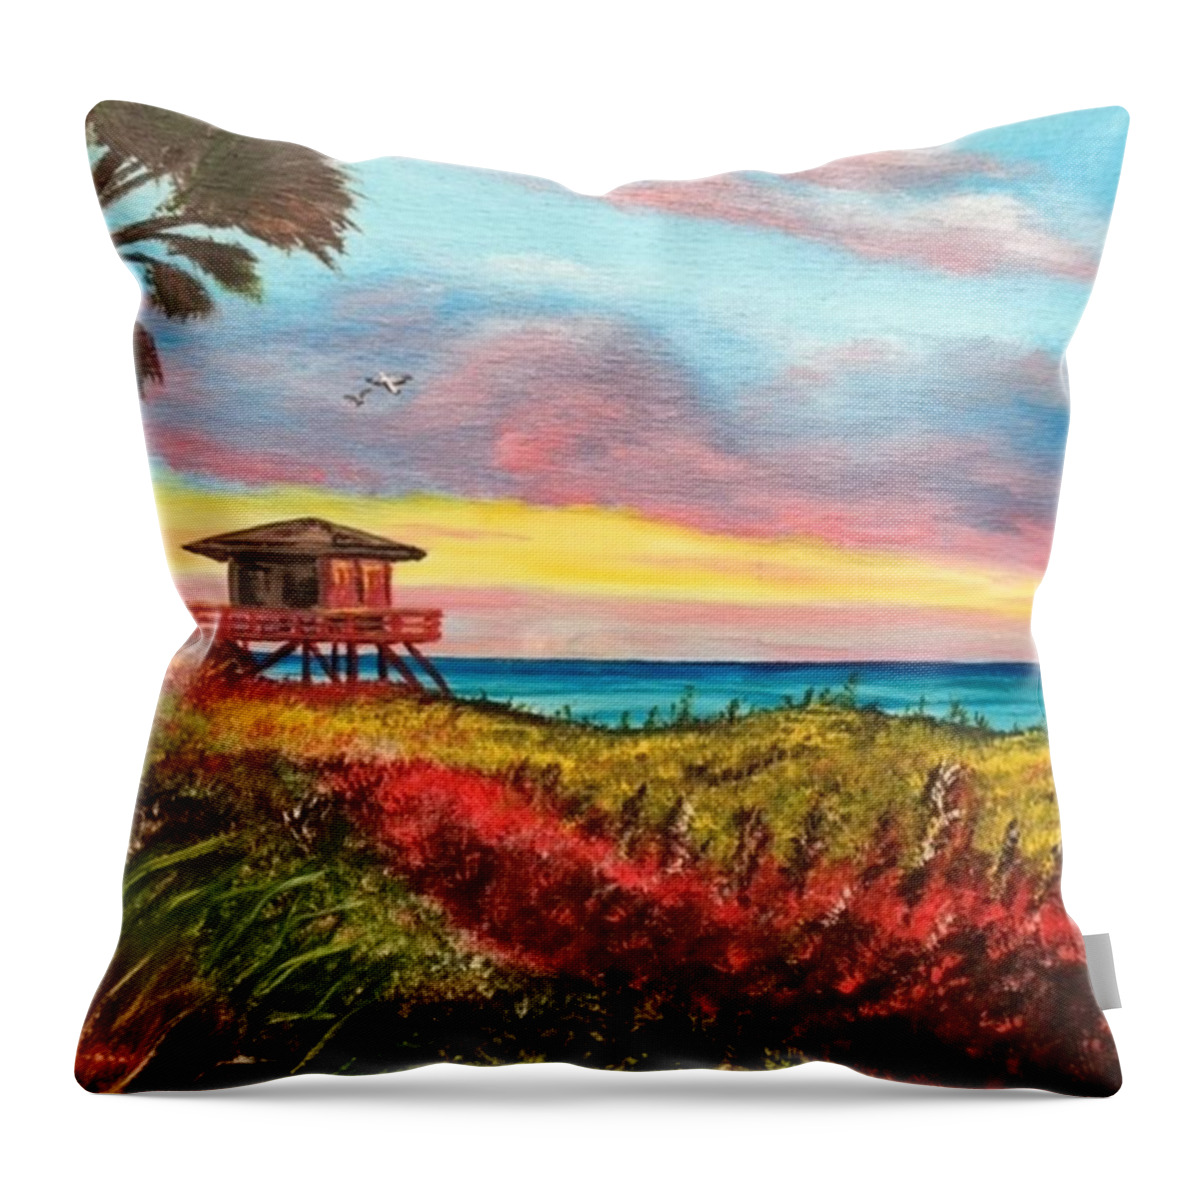 Nokomis Throw Pillow featuring the painting Nokomis Florida Beach At Sunset by Lloyd Dobson